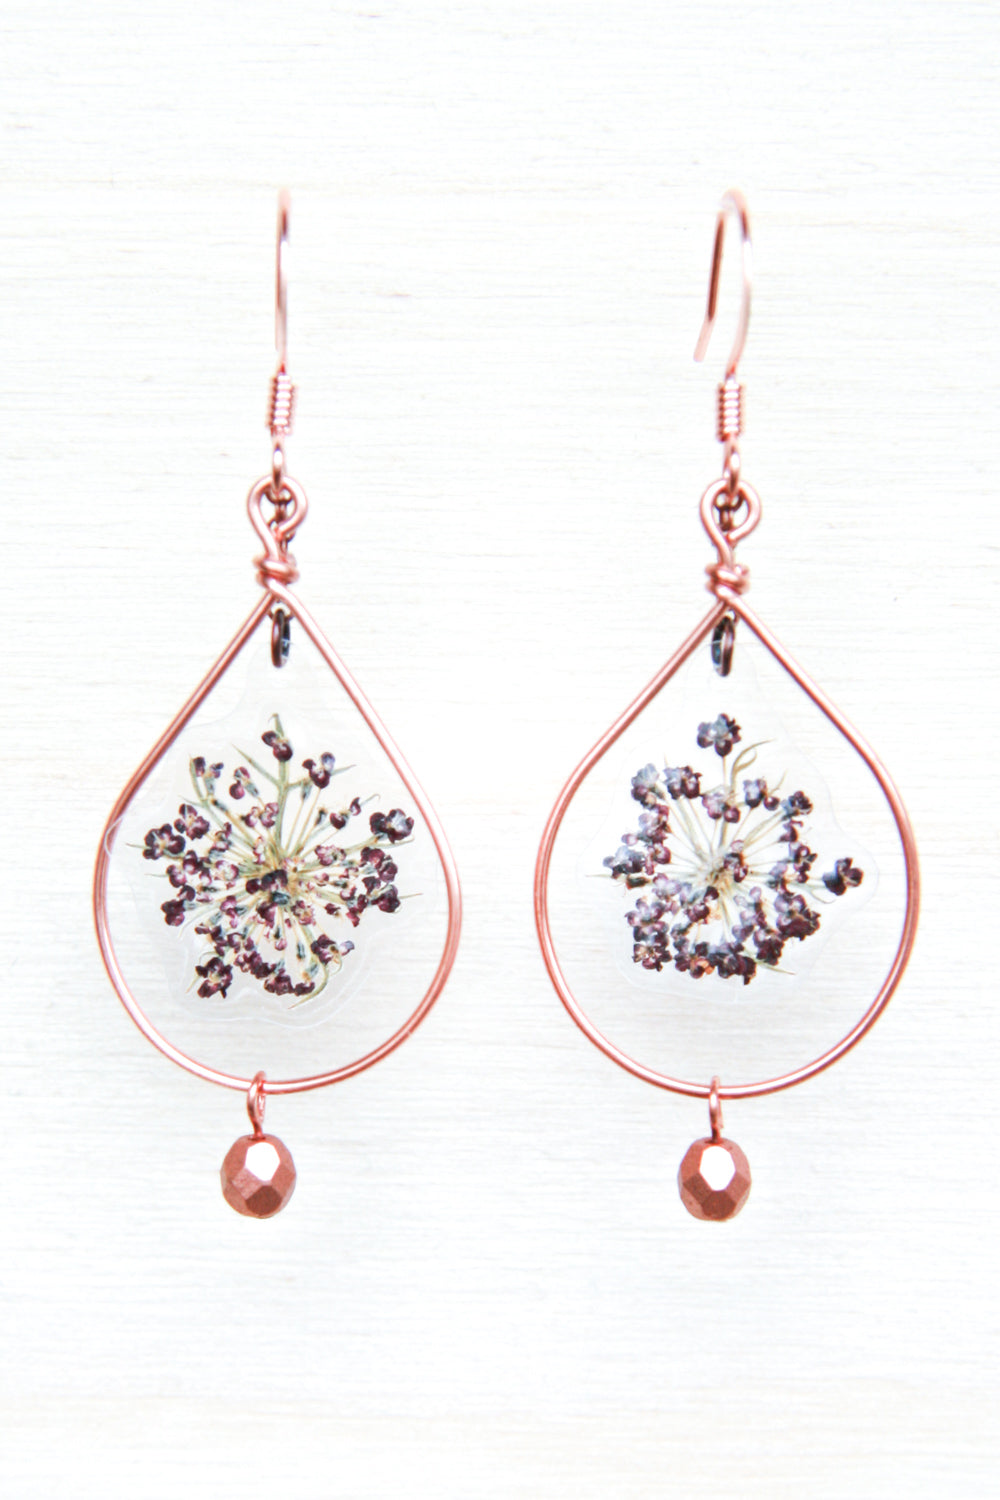 Purple Queen Anne’s Lace Pressed Flower Earrings with Copper Teardrop Hoop & Glass Beads